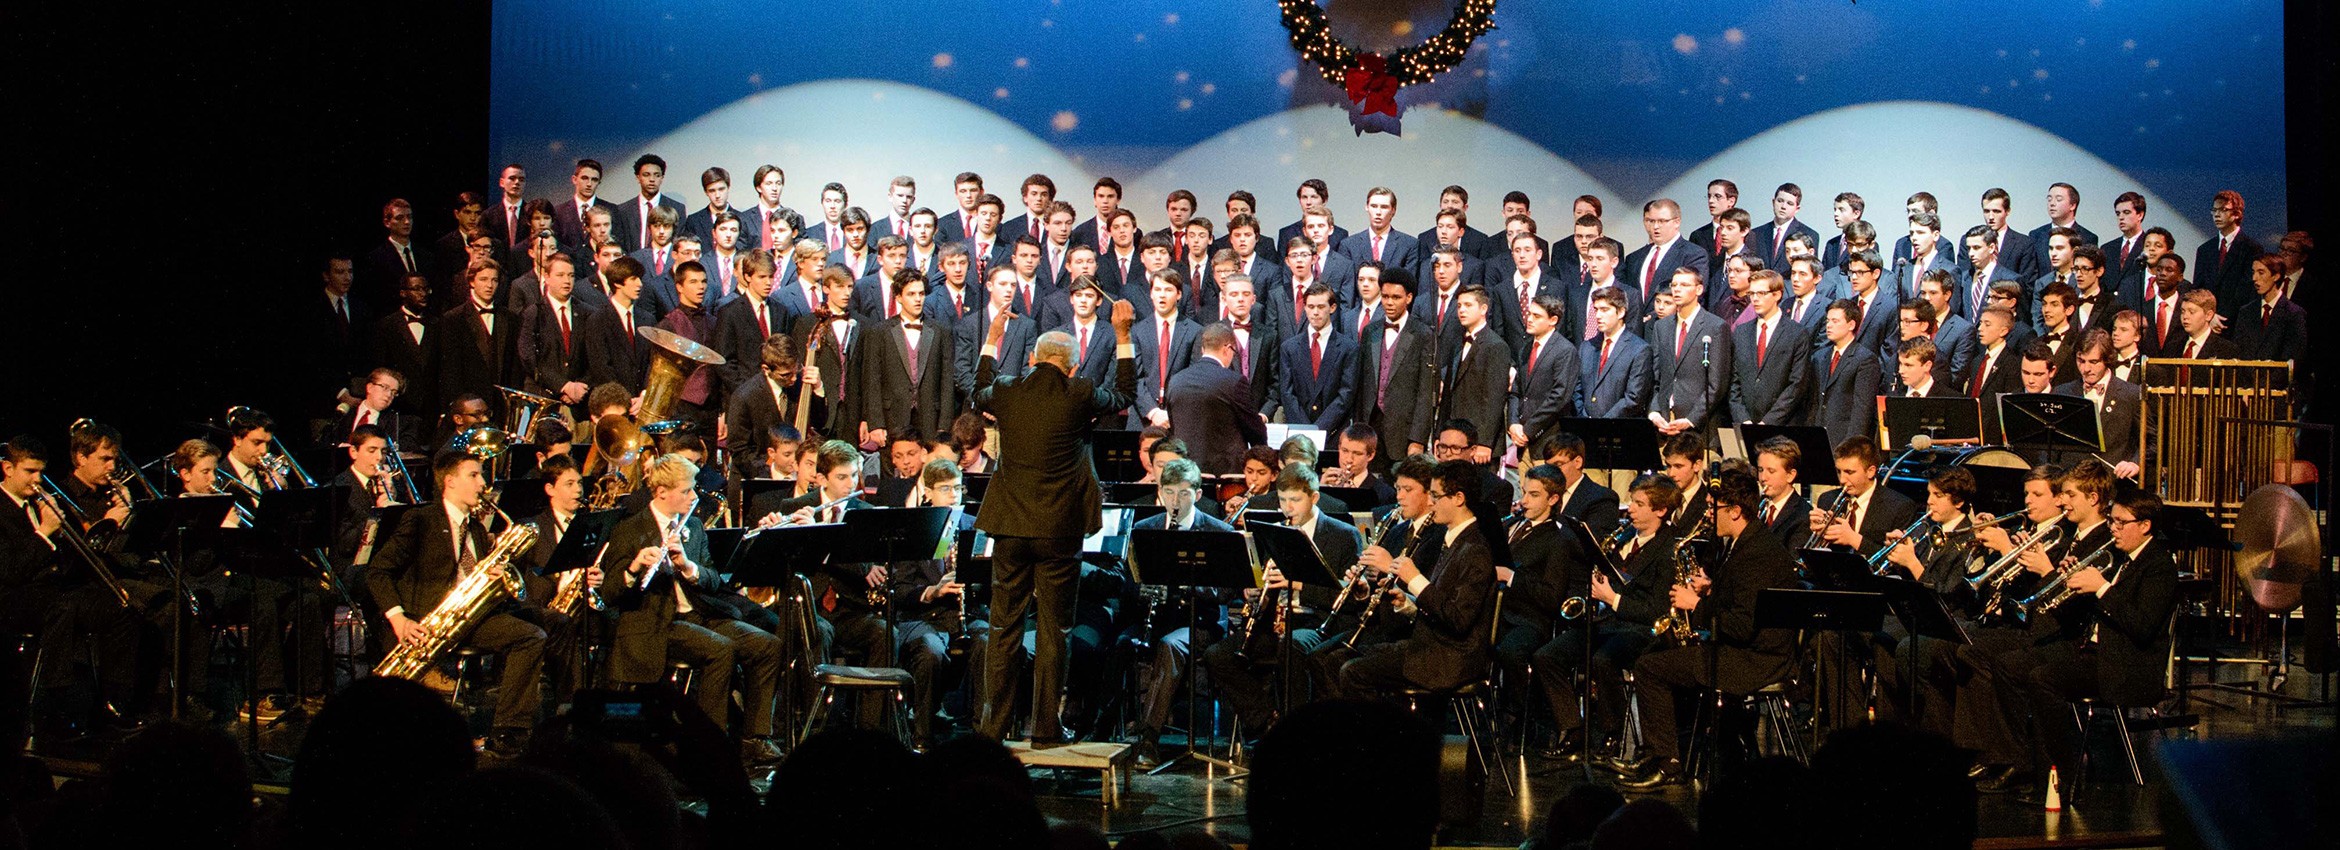 St. Joseph's Collegiate Institute Christmas Concert > All